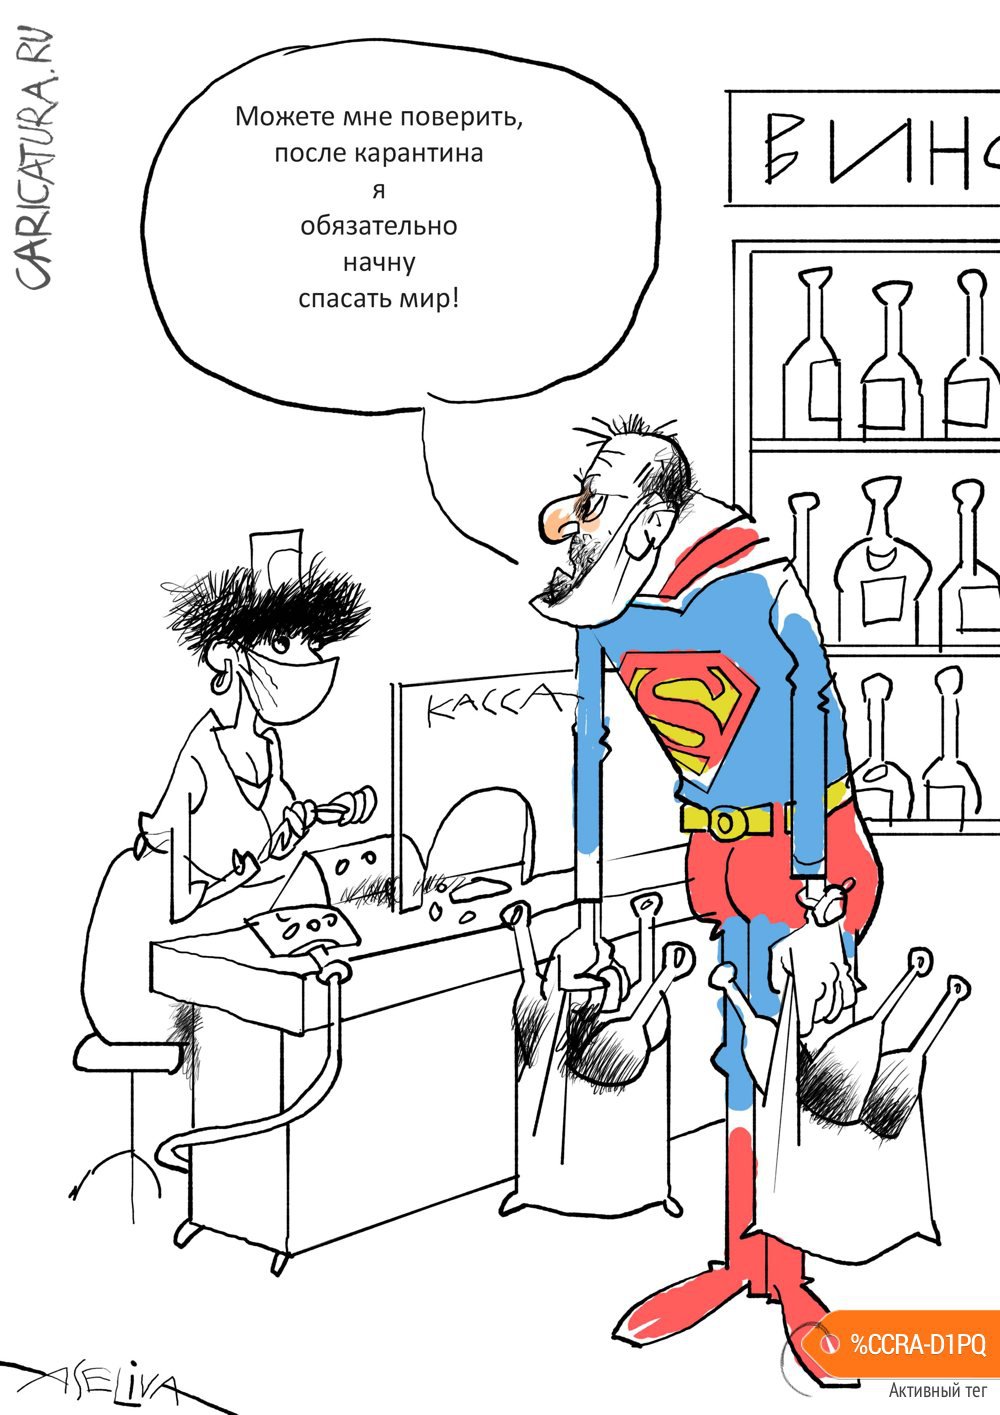 Карикатура "Не все супермены!", Андрей Селиванов